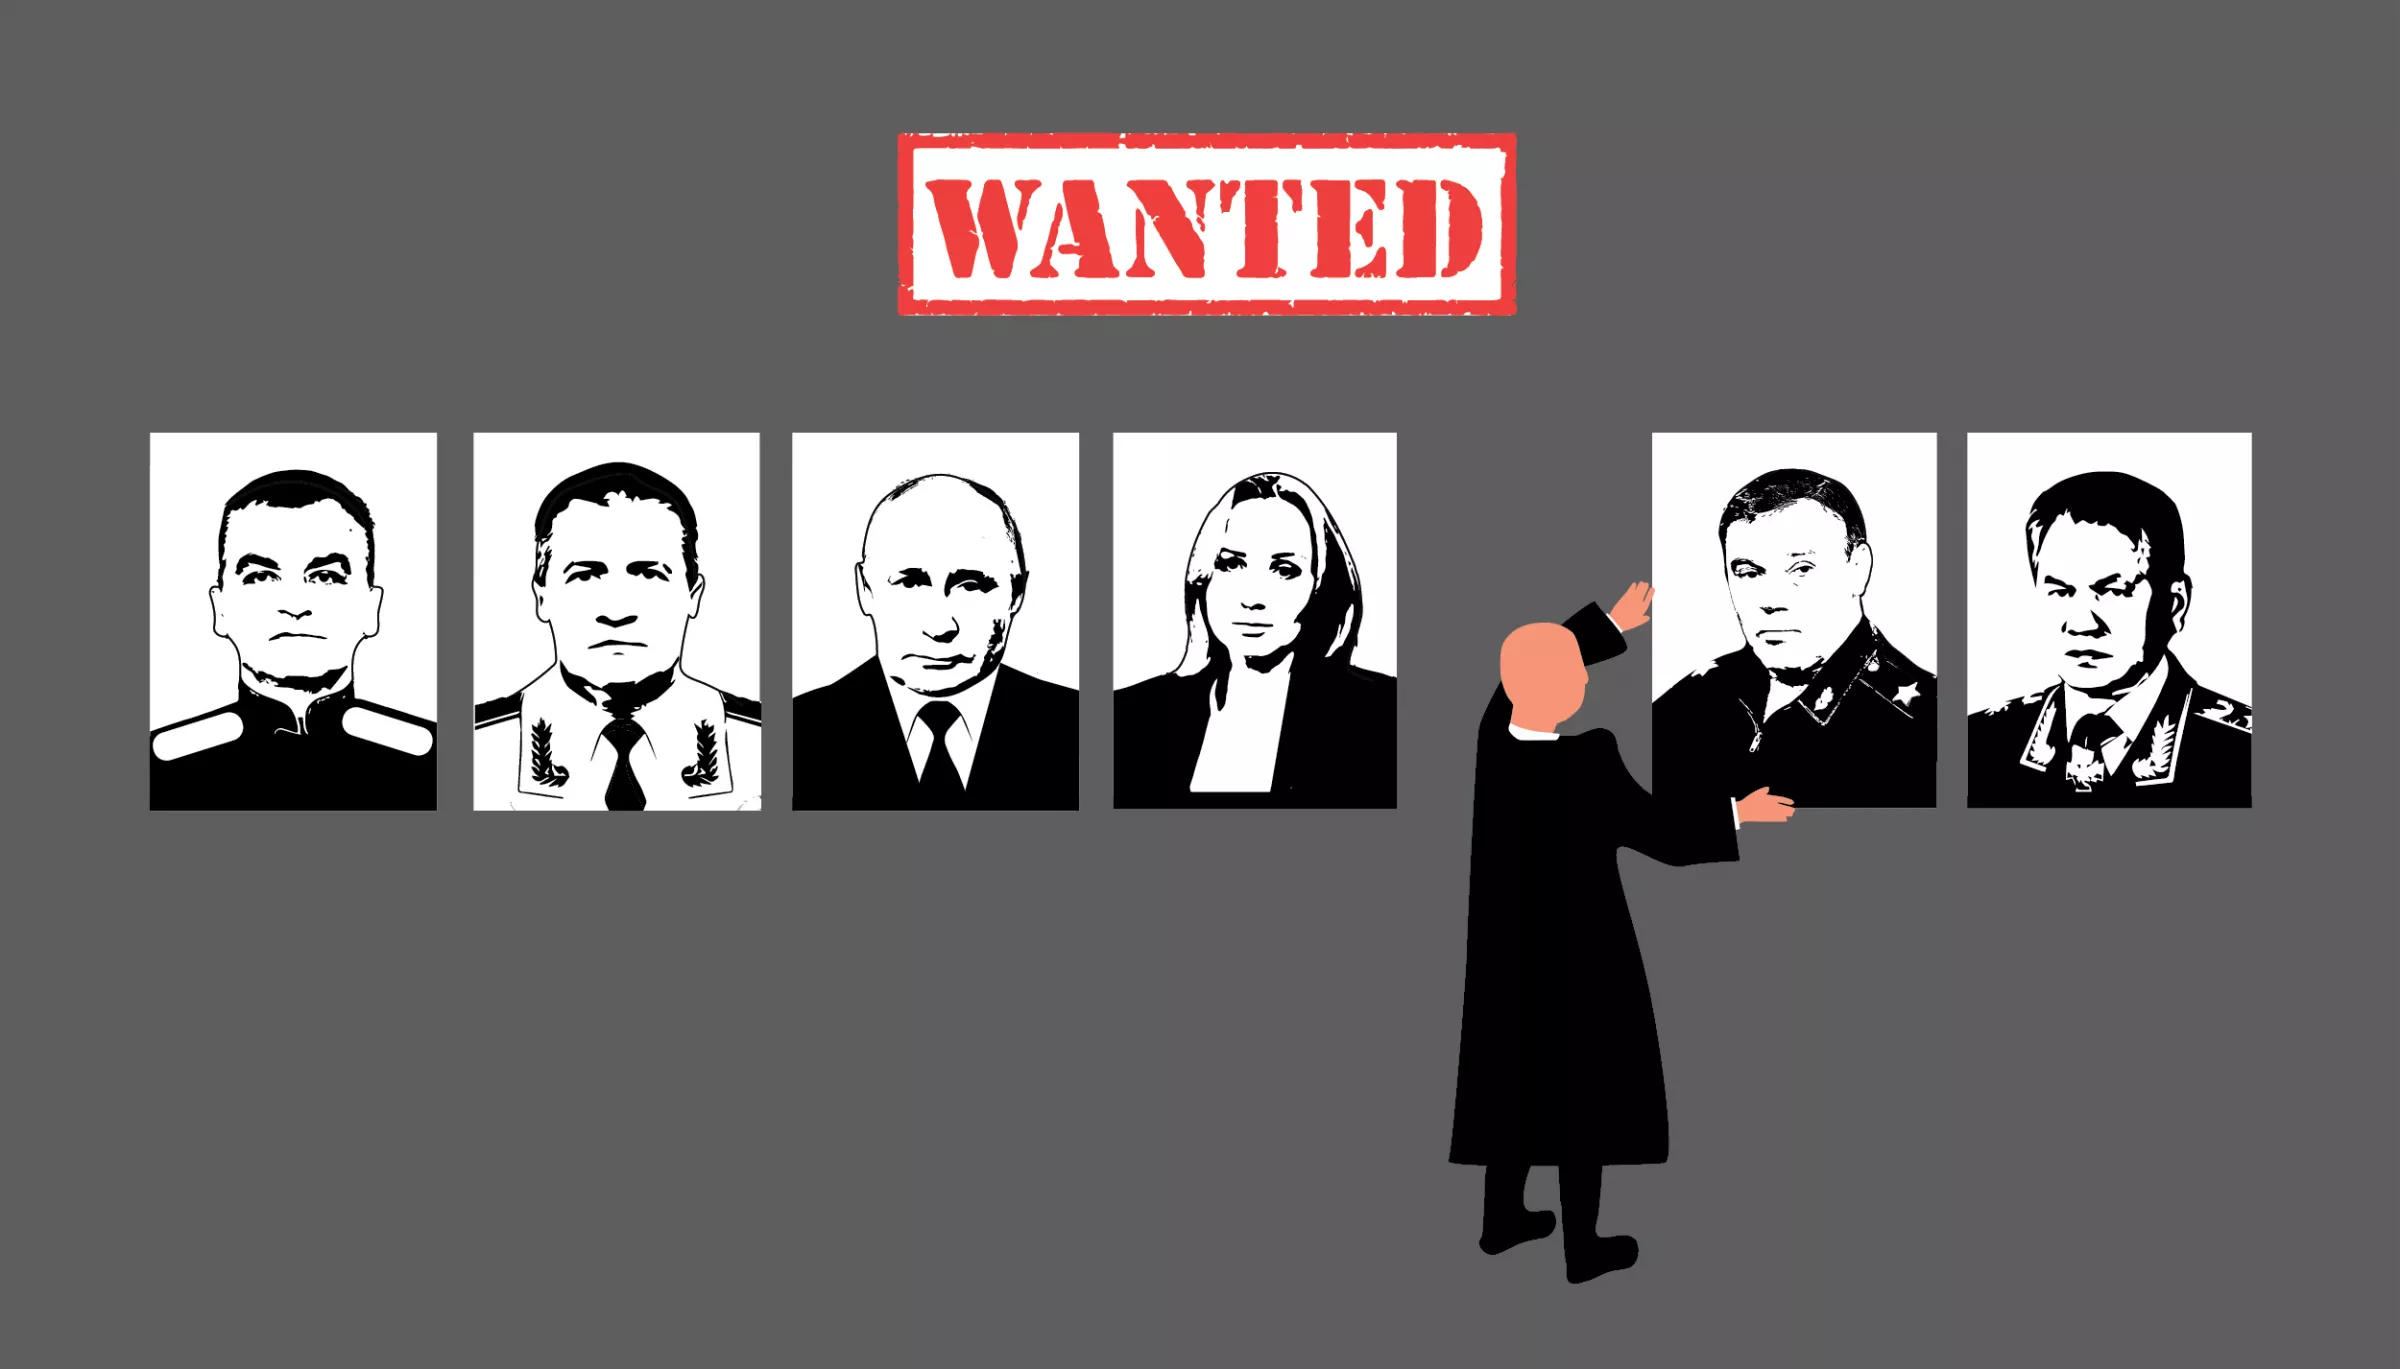 «Скільки у Міжнародного кримінального суду дивізій?». Як проросійські телеграм-канали розповідали про ордер на арешт Герасимова і Шойгу